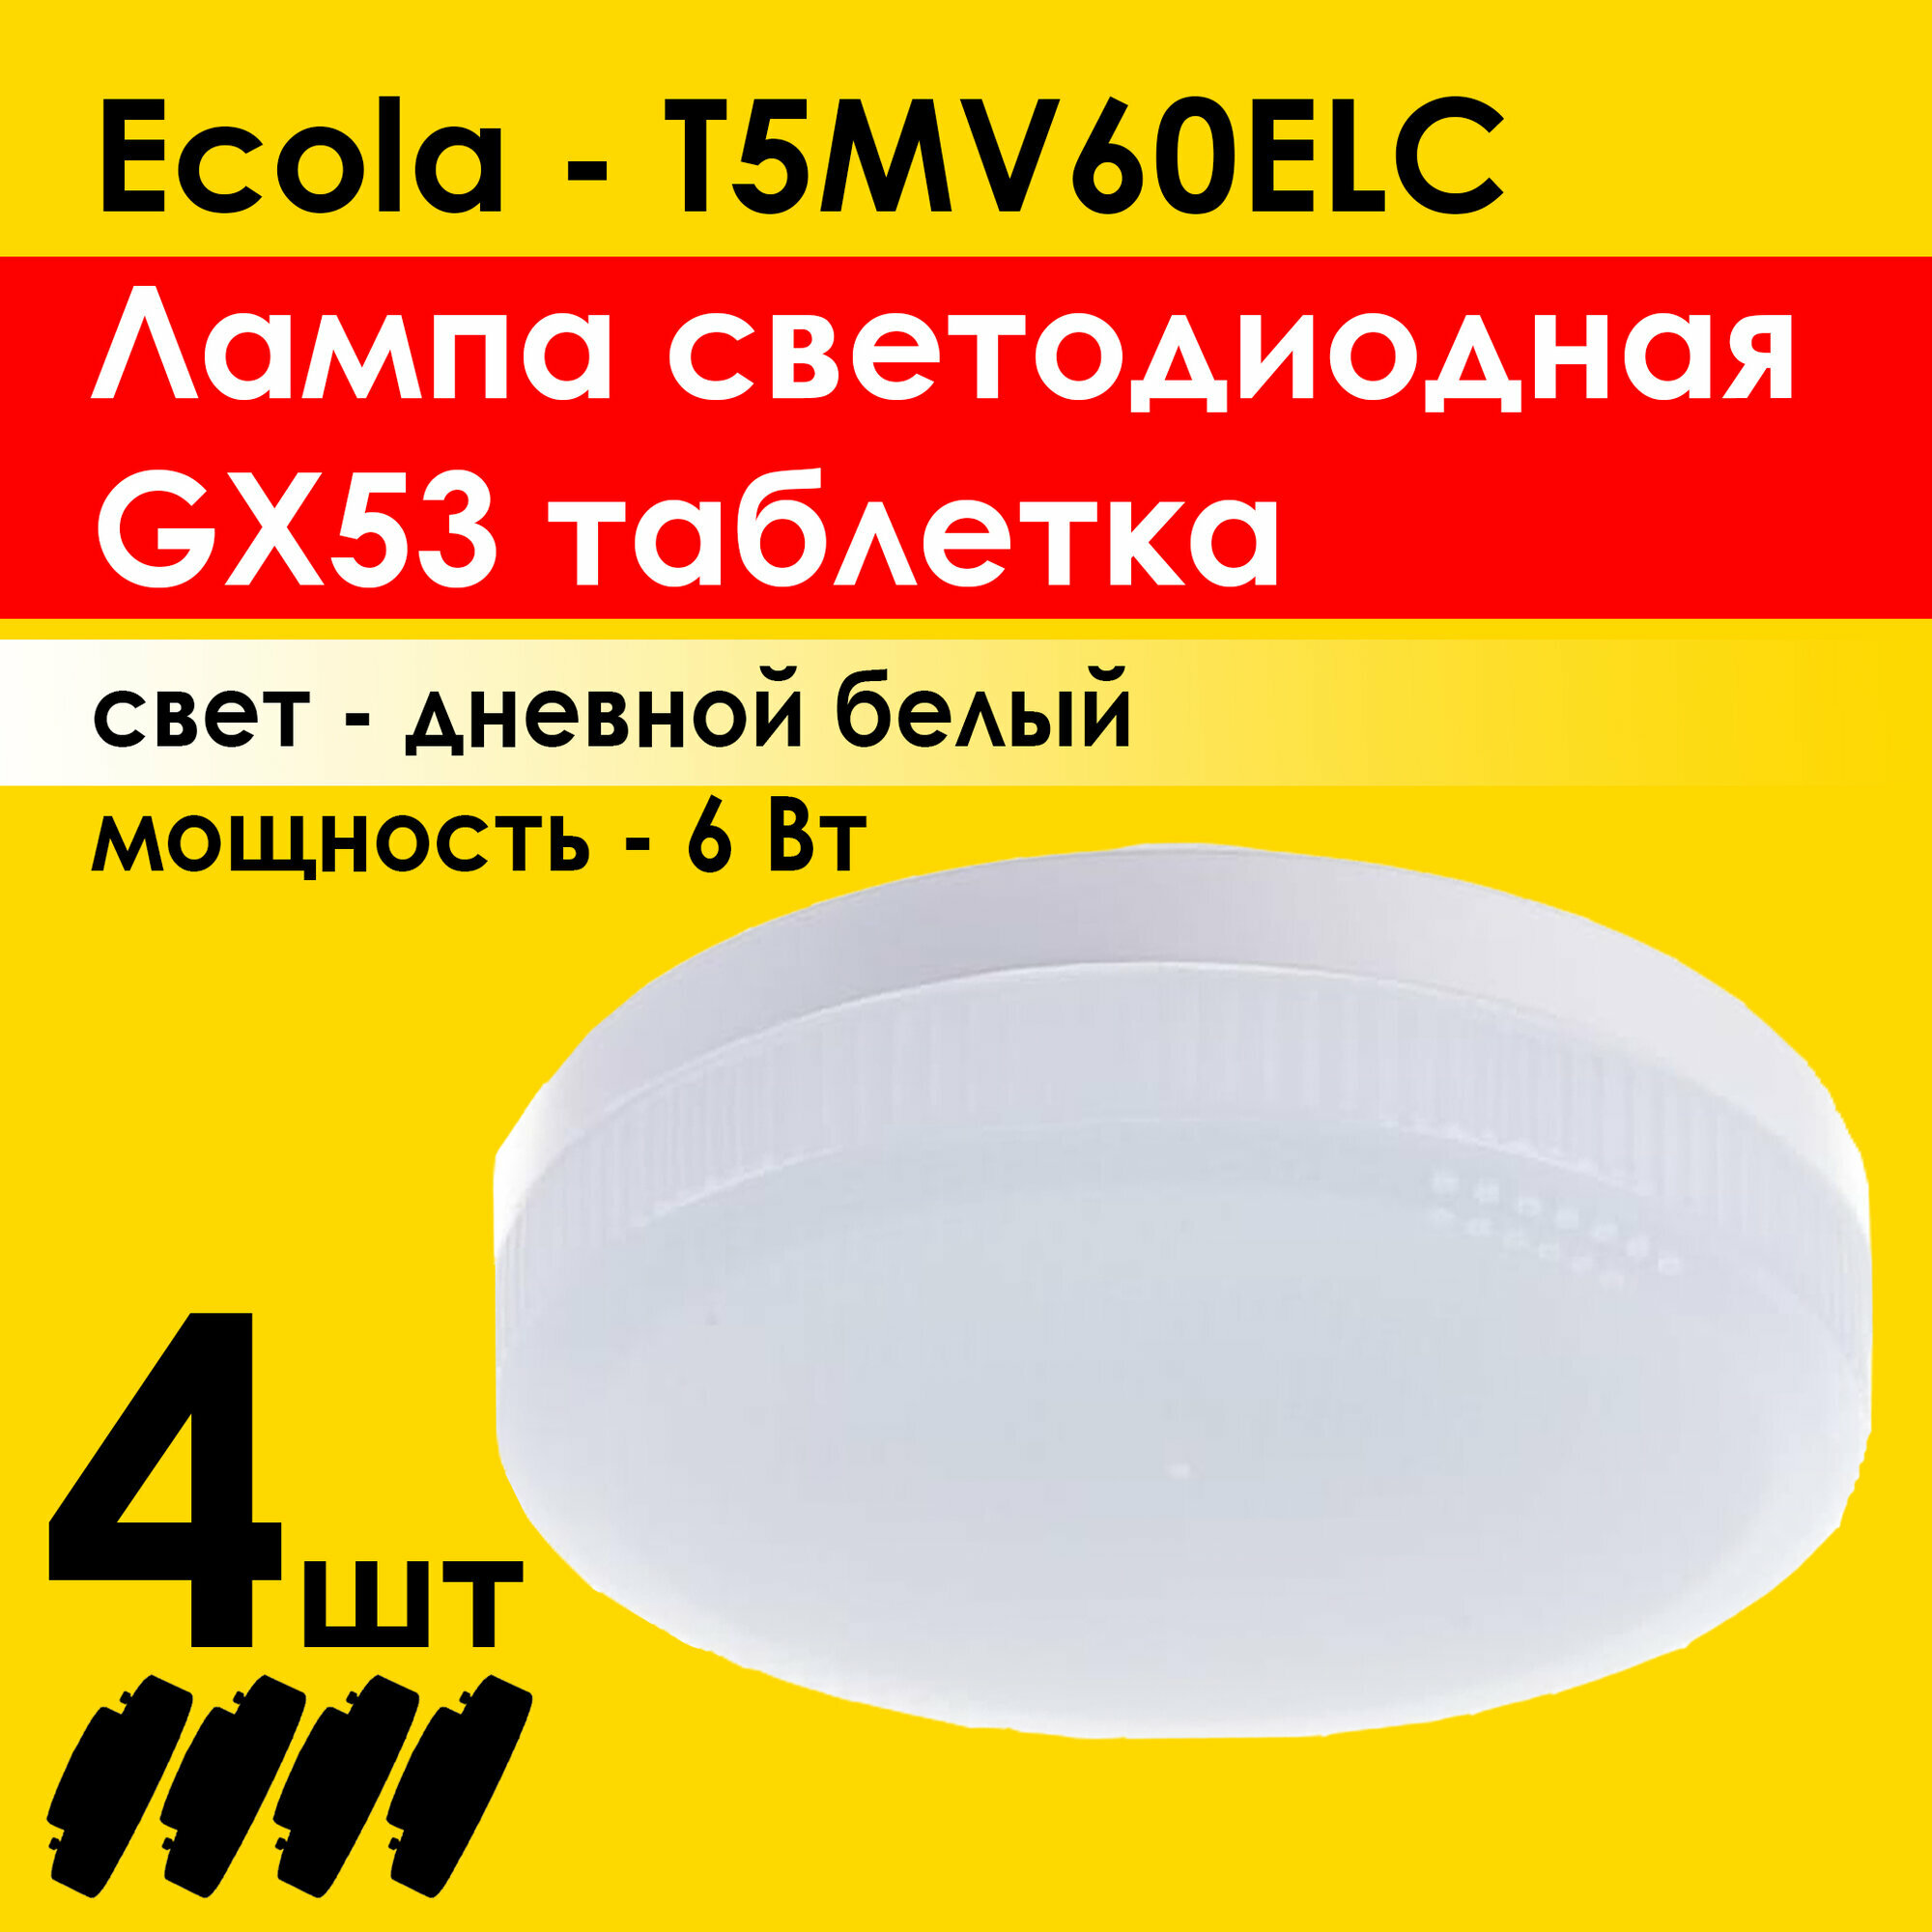 Лампа светодиодная (4штуки) потолочная Ecola Light GX53 LED 6,0W, нейтральный белый свет 4200K (T5MV60ELC)